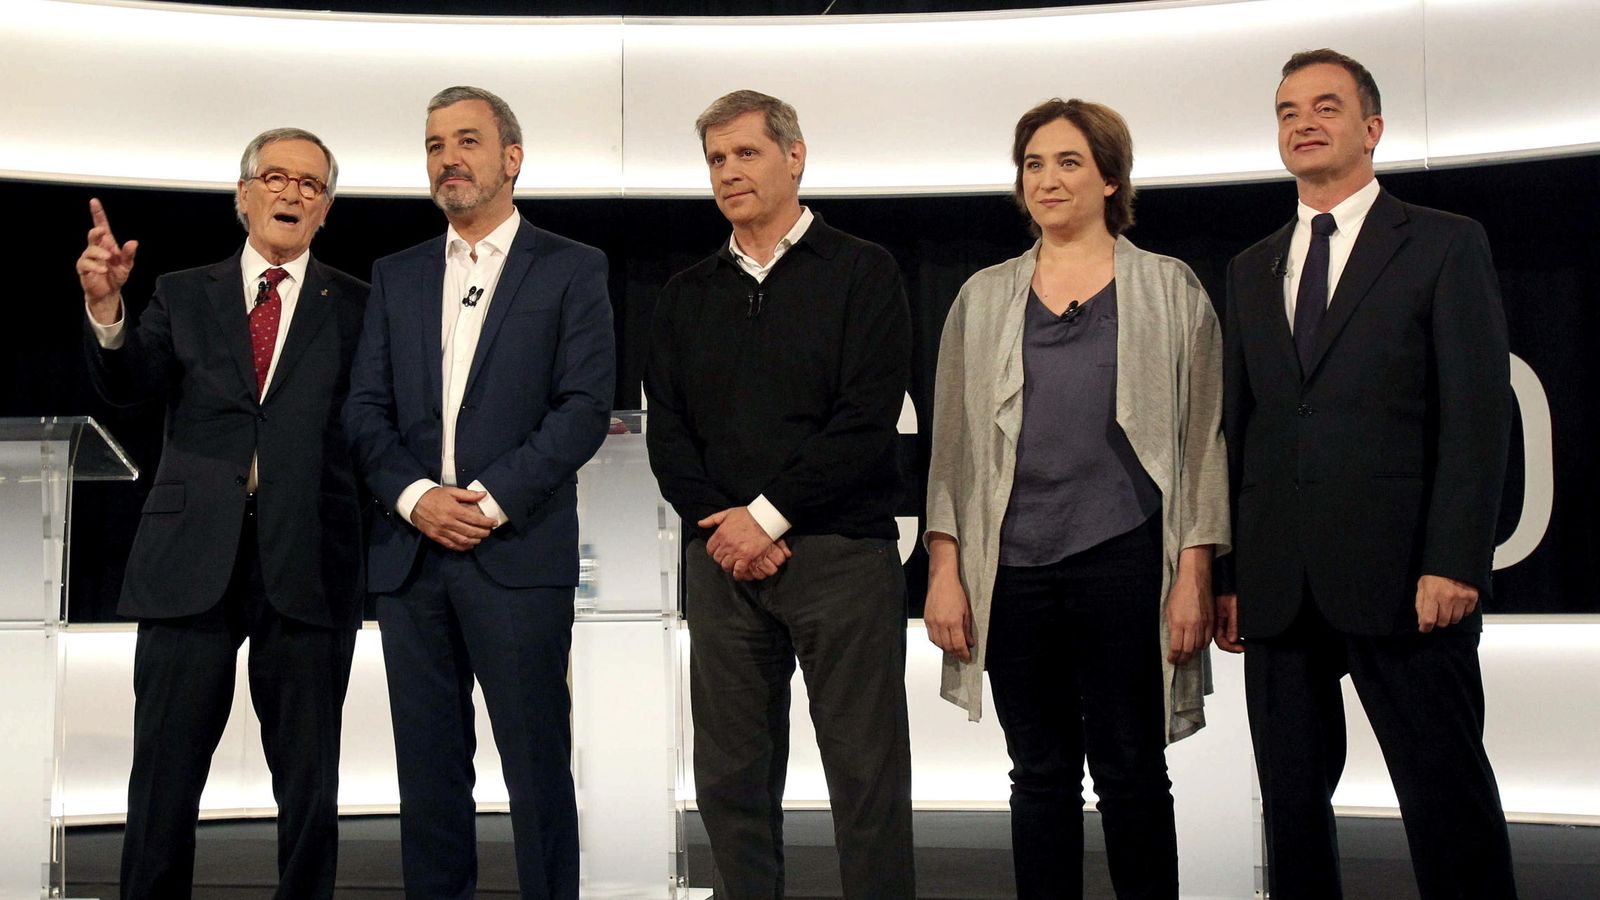 Foto: Xavier Trias (CiU), Jaume Collboni (PSC), Alberto Fernández (PP), Ada Colau (Barcelona En Comú) y Alfred Bosch (ERC), tras el debate televisivo. EFE/Toni Garriga